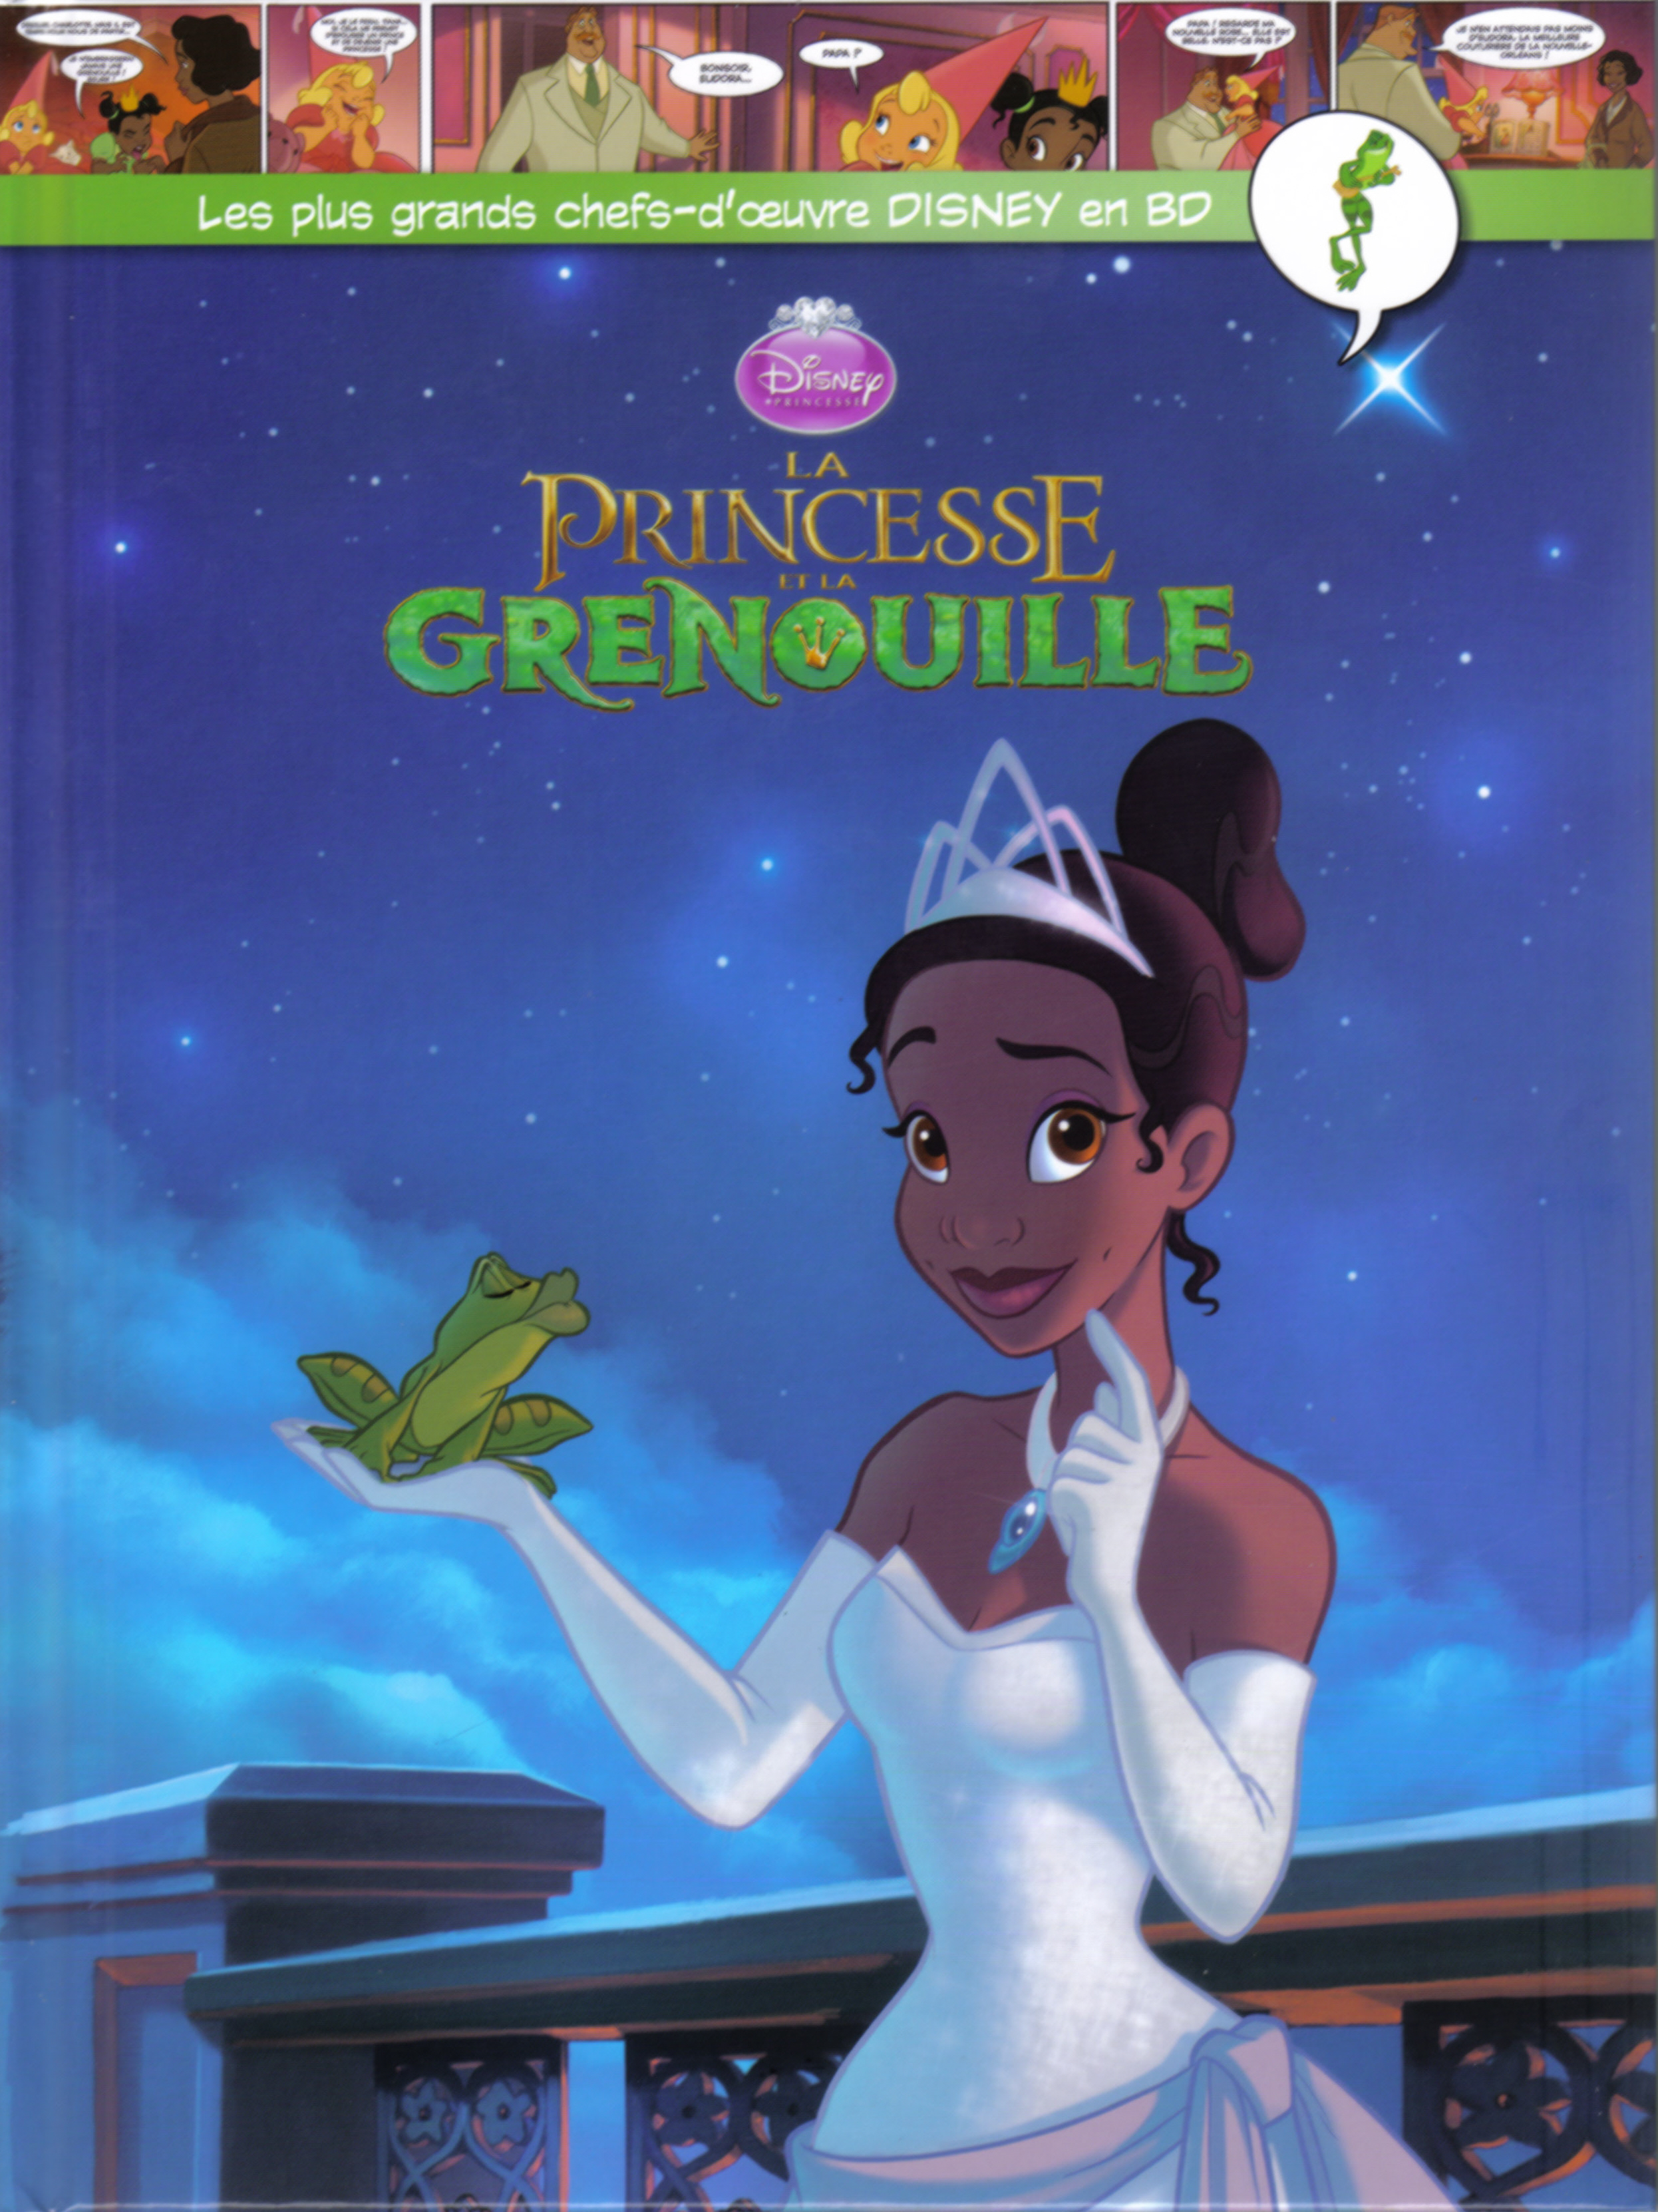 M Diffuse La Princesse Et La Grenouille Le Chef Doeuvre Disney Le My Xxx Hot Girl 1837